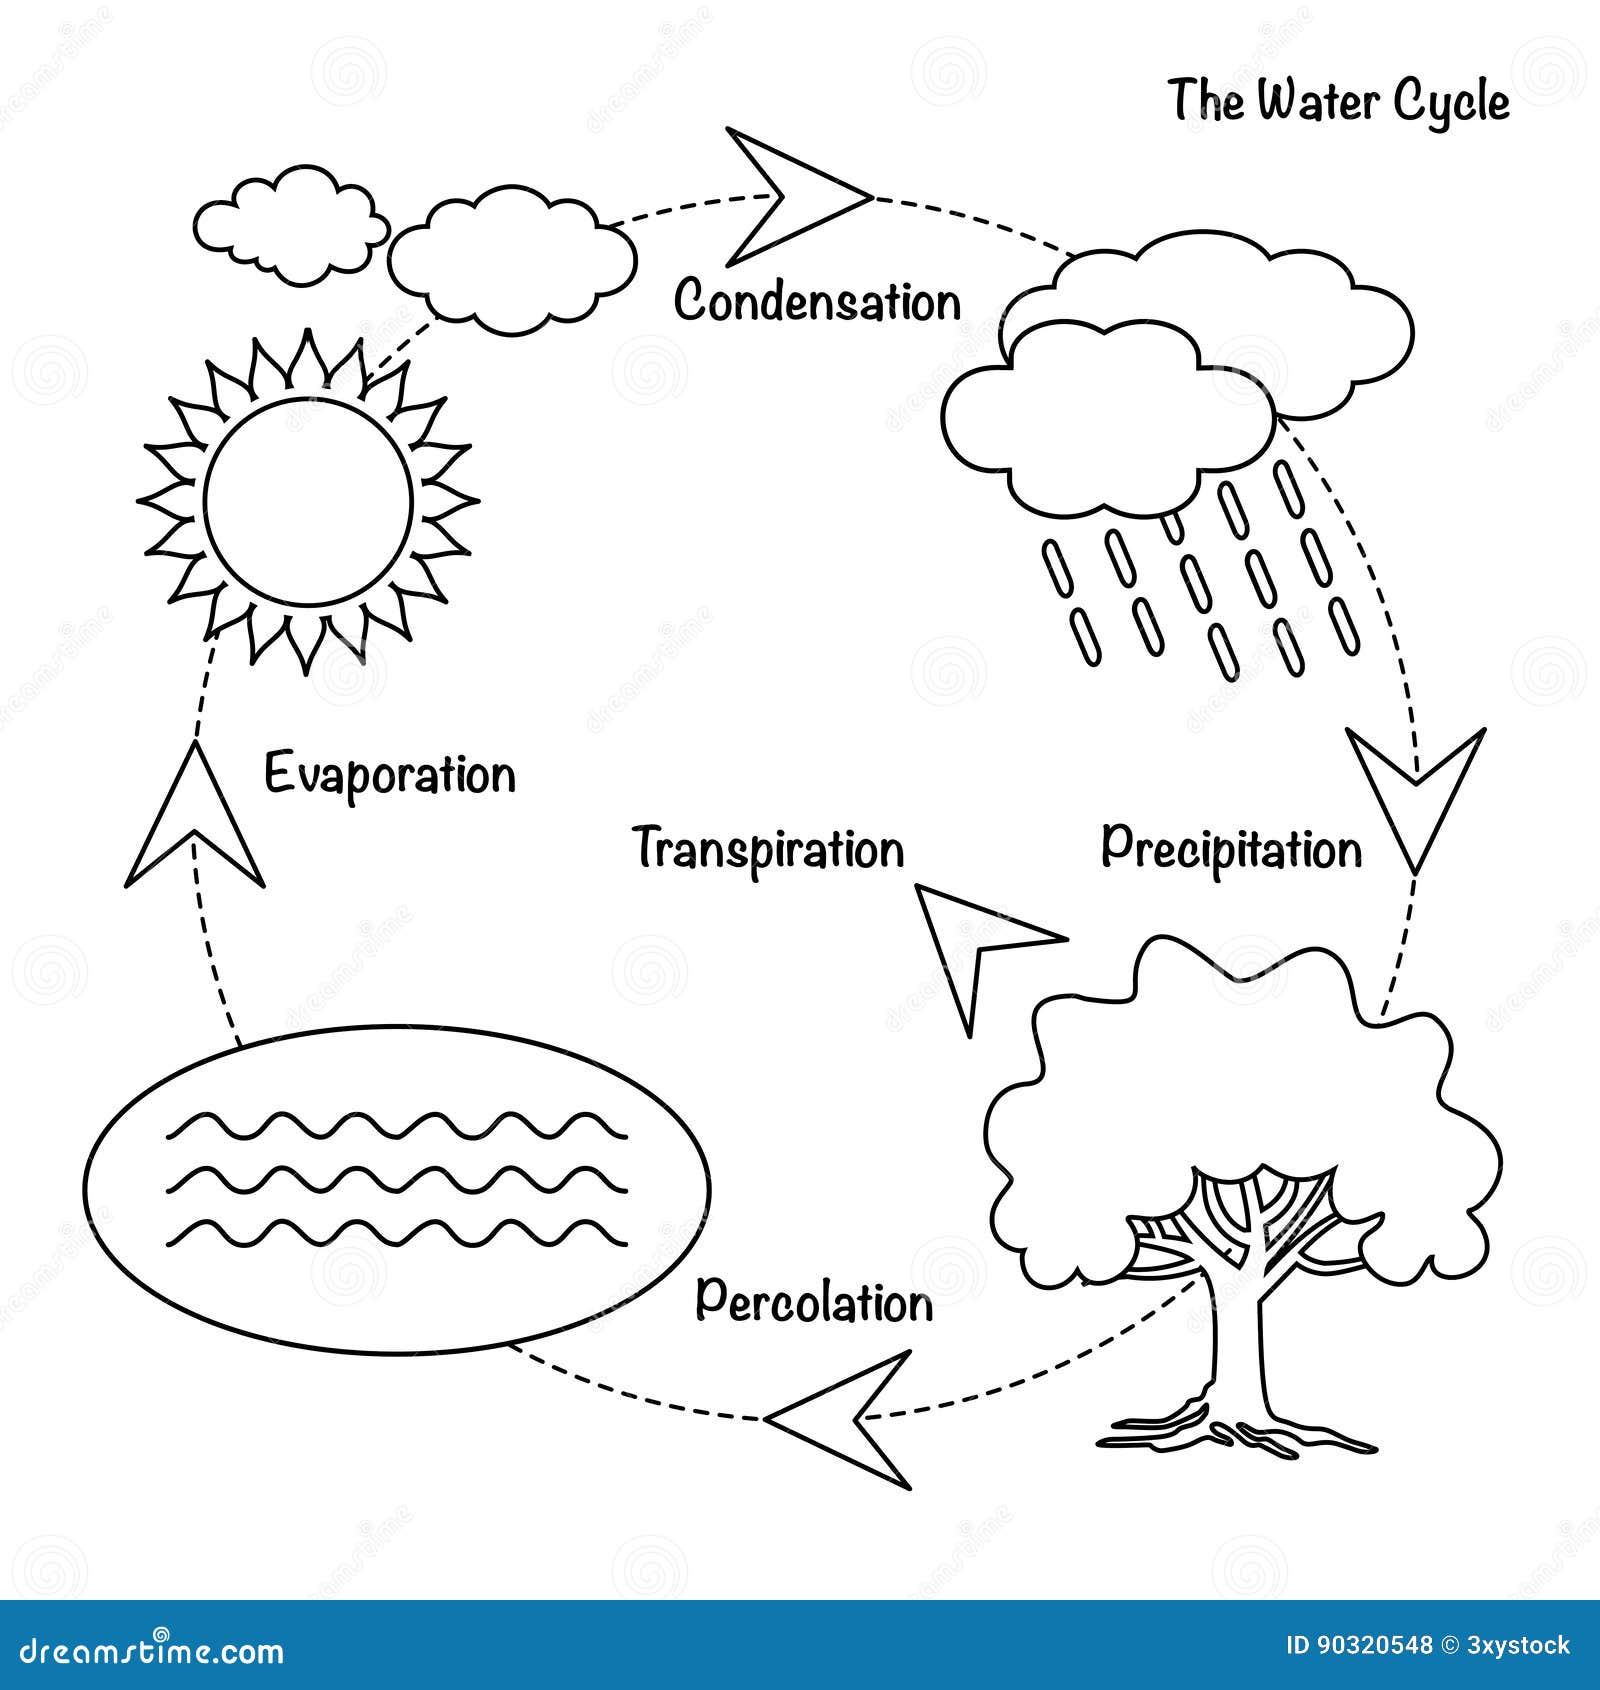 MetLink - Royal Meteorological Society The Water Cycle -